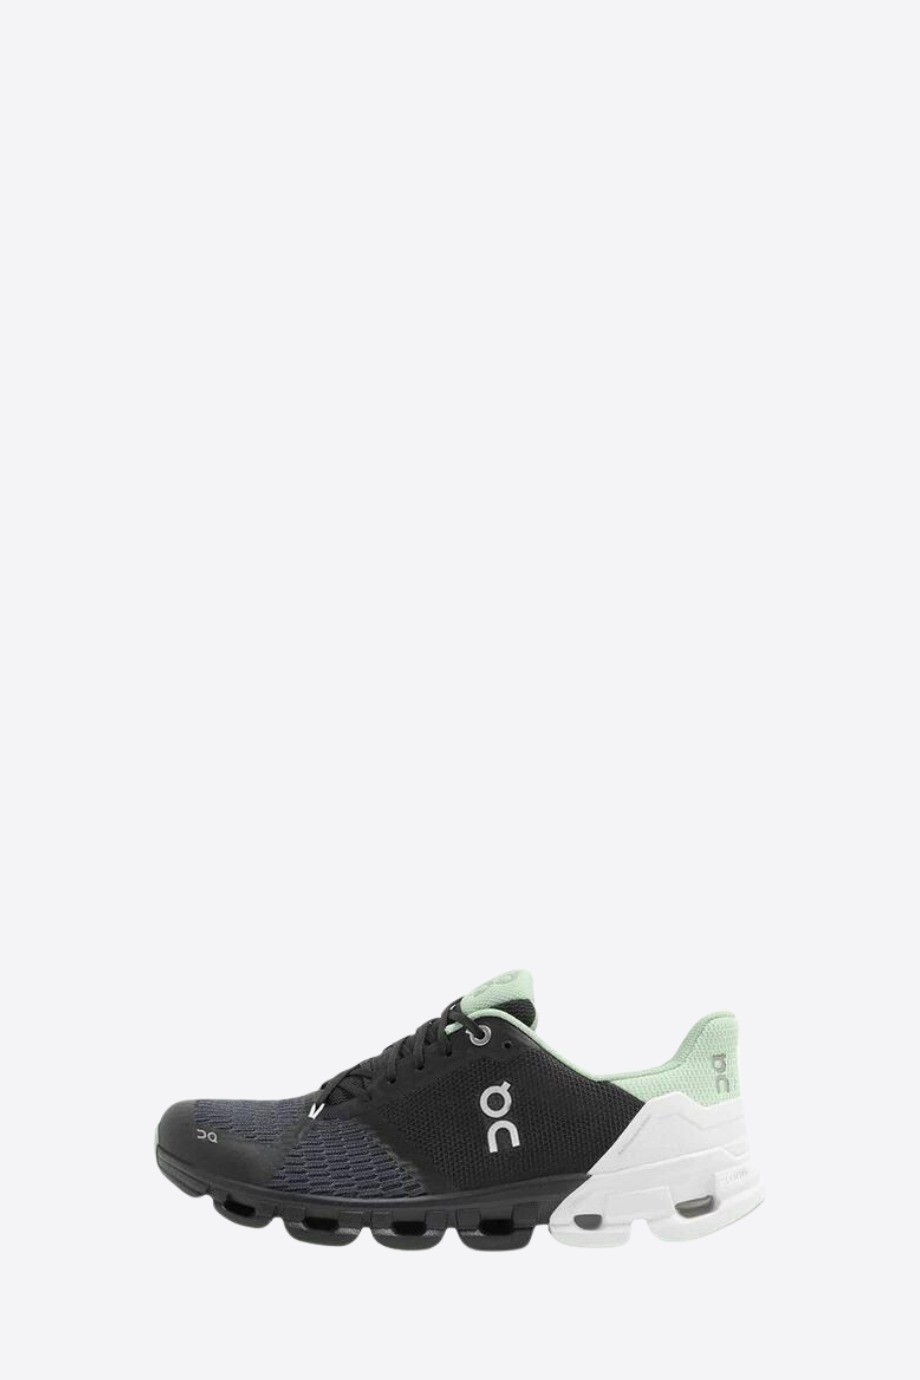 On - Cloudflyer Sneakers for Women - Black/Mint